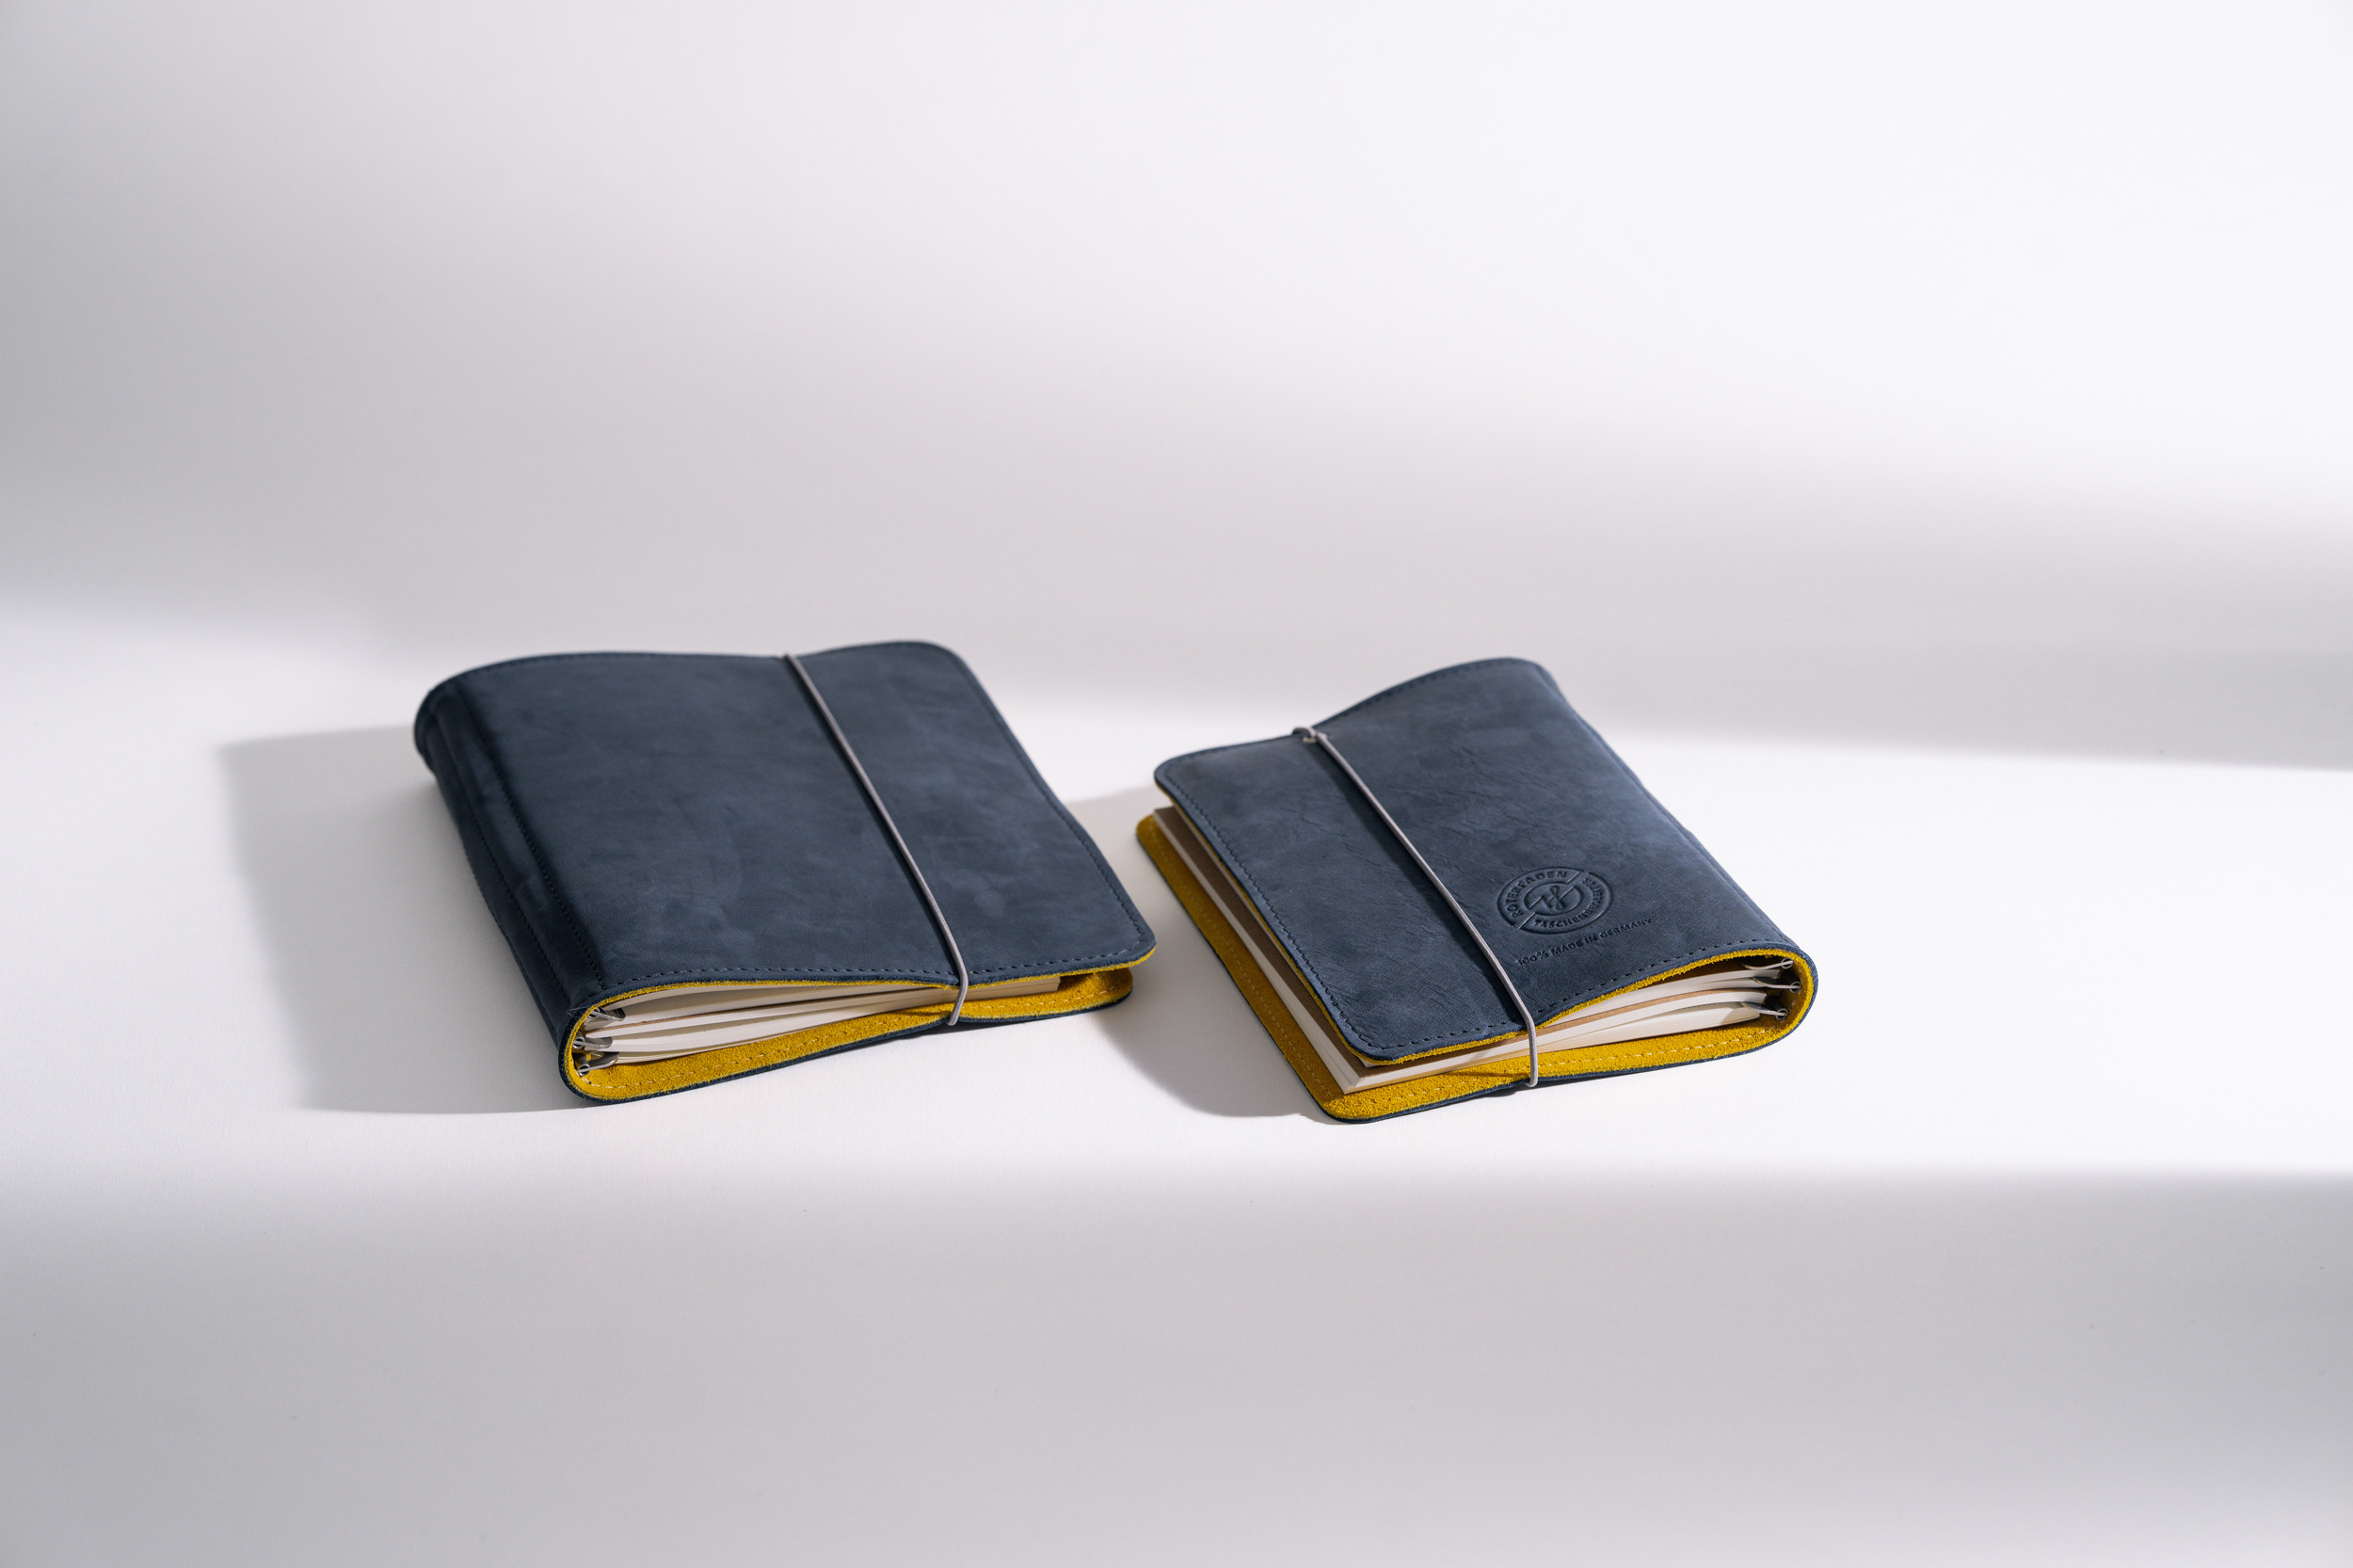 ROTERFADEN Taschenbegleiter SO_22 – Vielseitiges Design für B6 und M Formate mit »Blauer Engel« zertifiziertem Leder und Verschlussgummi.